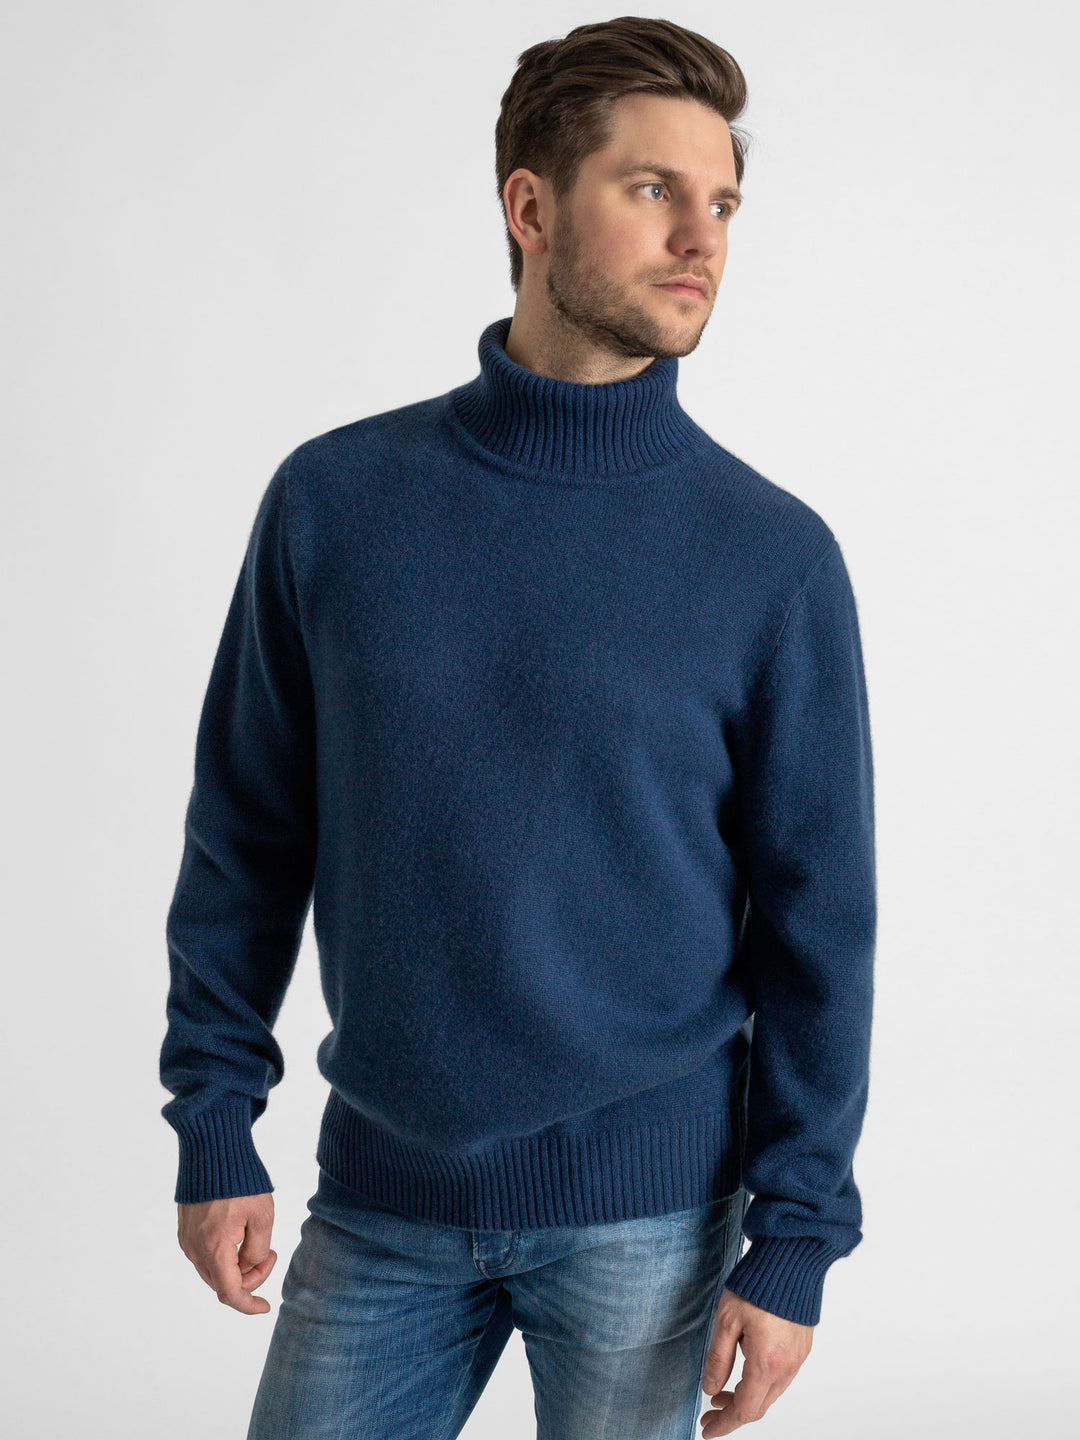 Turtle neck cashmere sweater. 100% cashmere. Scandinavian design. Color: Mountain blue